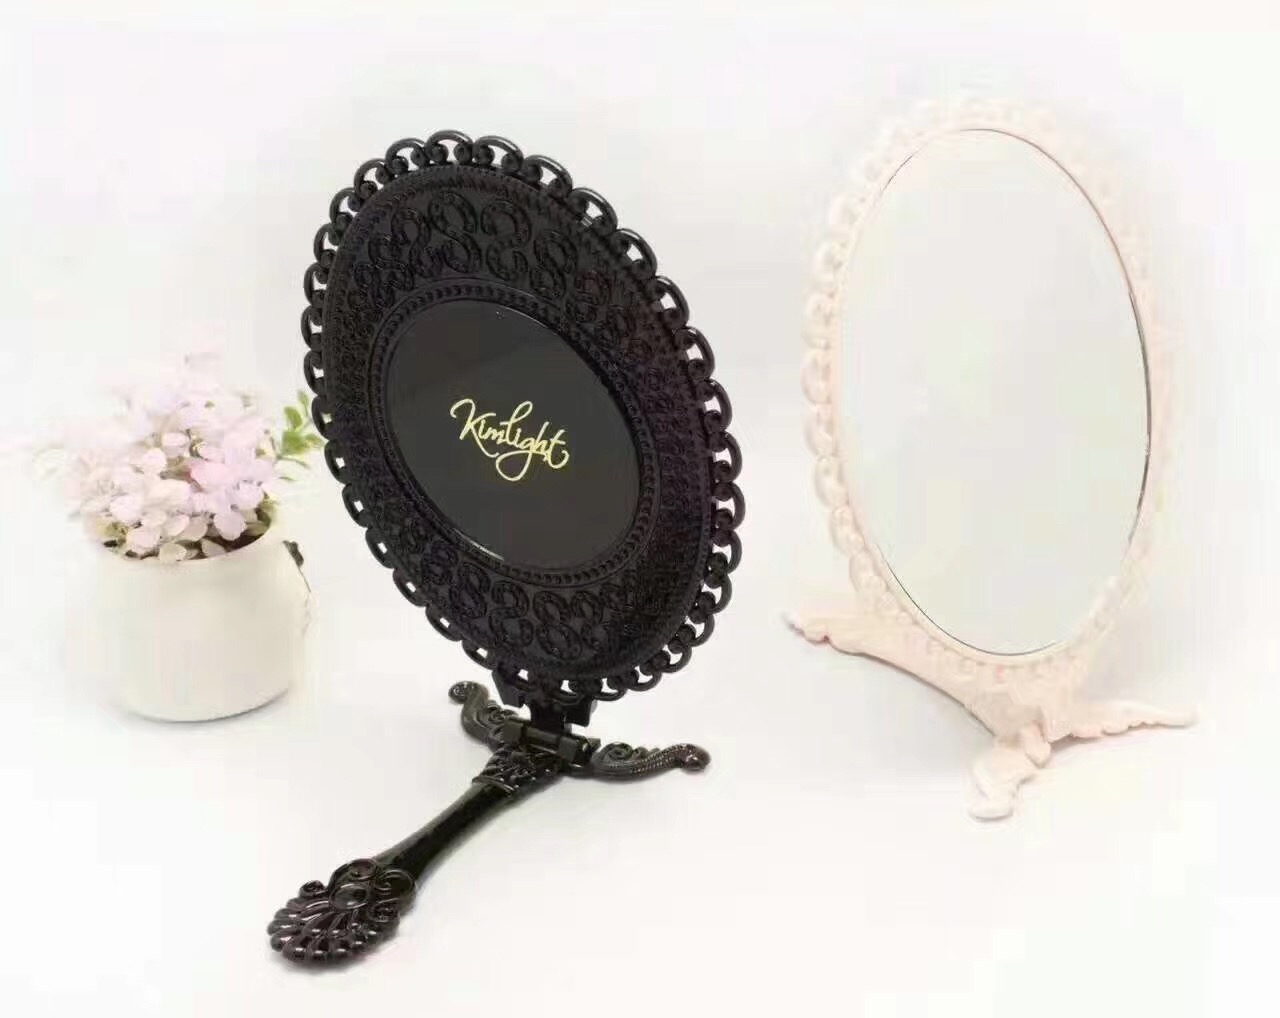 英伦折叠手柄镜，高端品质折叠手柄镜，家居高端美妆镜，便携折叠手柄镜，可丝印、烫印，激光logo